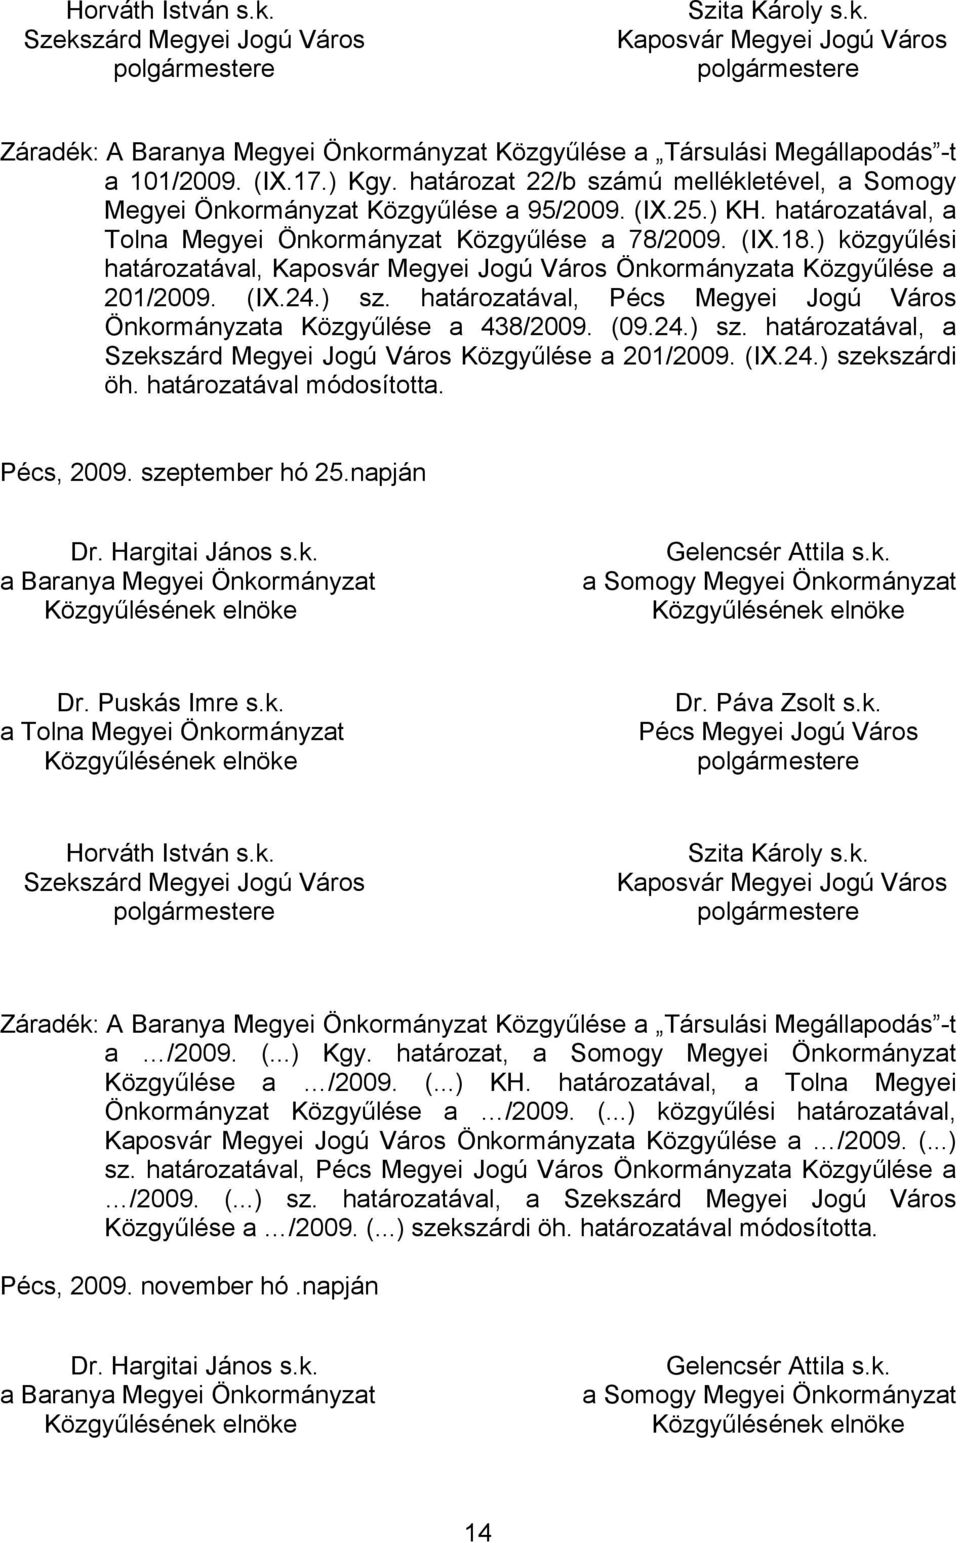 ) közgyűlési határozatával, Kaposvár Megyei Jogú Város Önkormányzata Közgyűlése a 201/2009. (IX.24.) sz. határozatával, Pécs Megyei Jogú Város Önkormányzata Közgyűlése a 438/2009. (09.24.) sz. határozatával, a Szekszárd Megyei Jogú Város Közgyűlése a 201/2009.